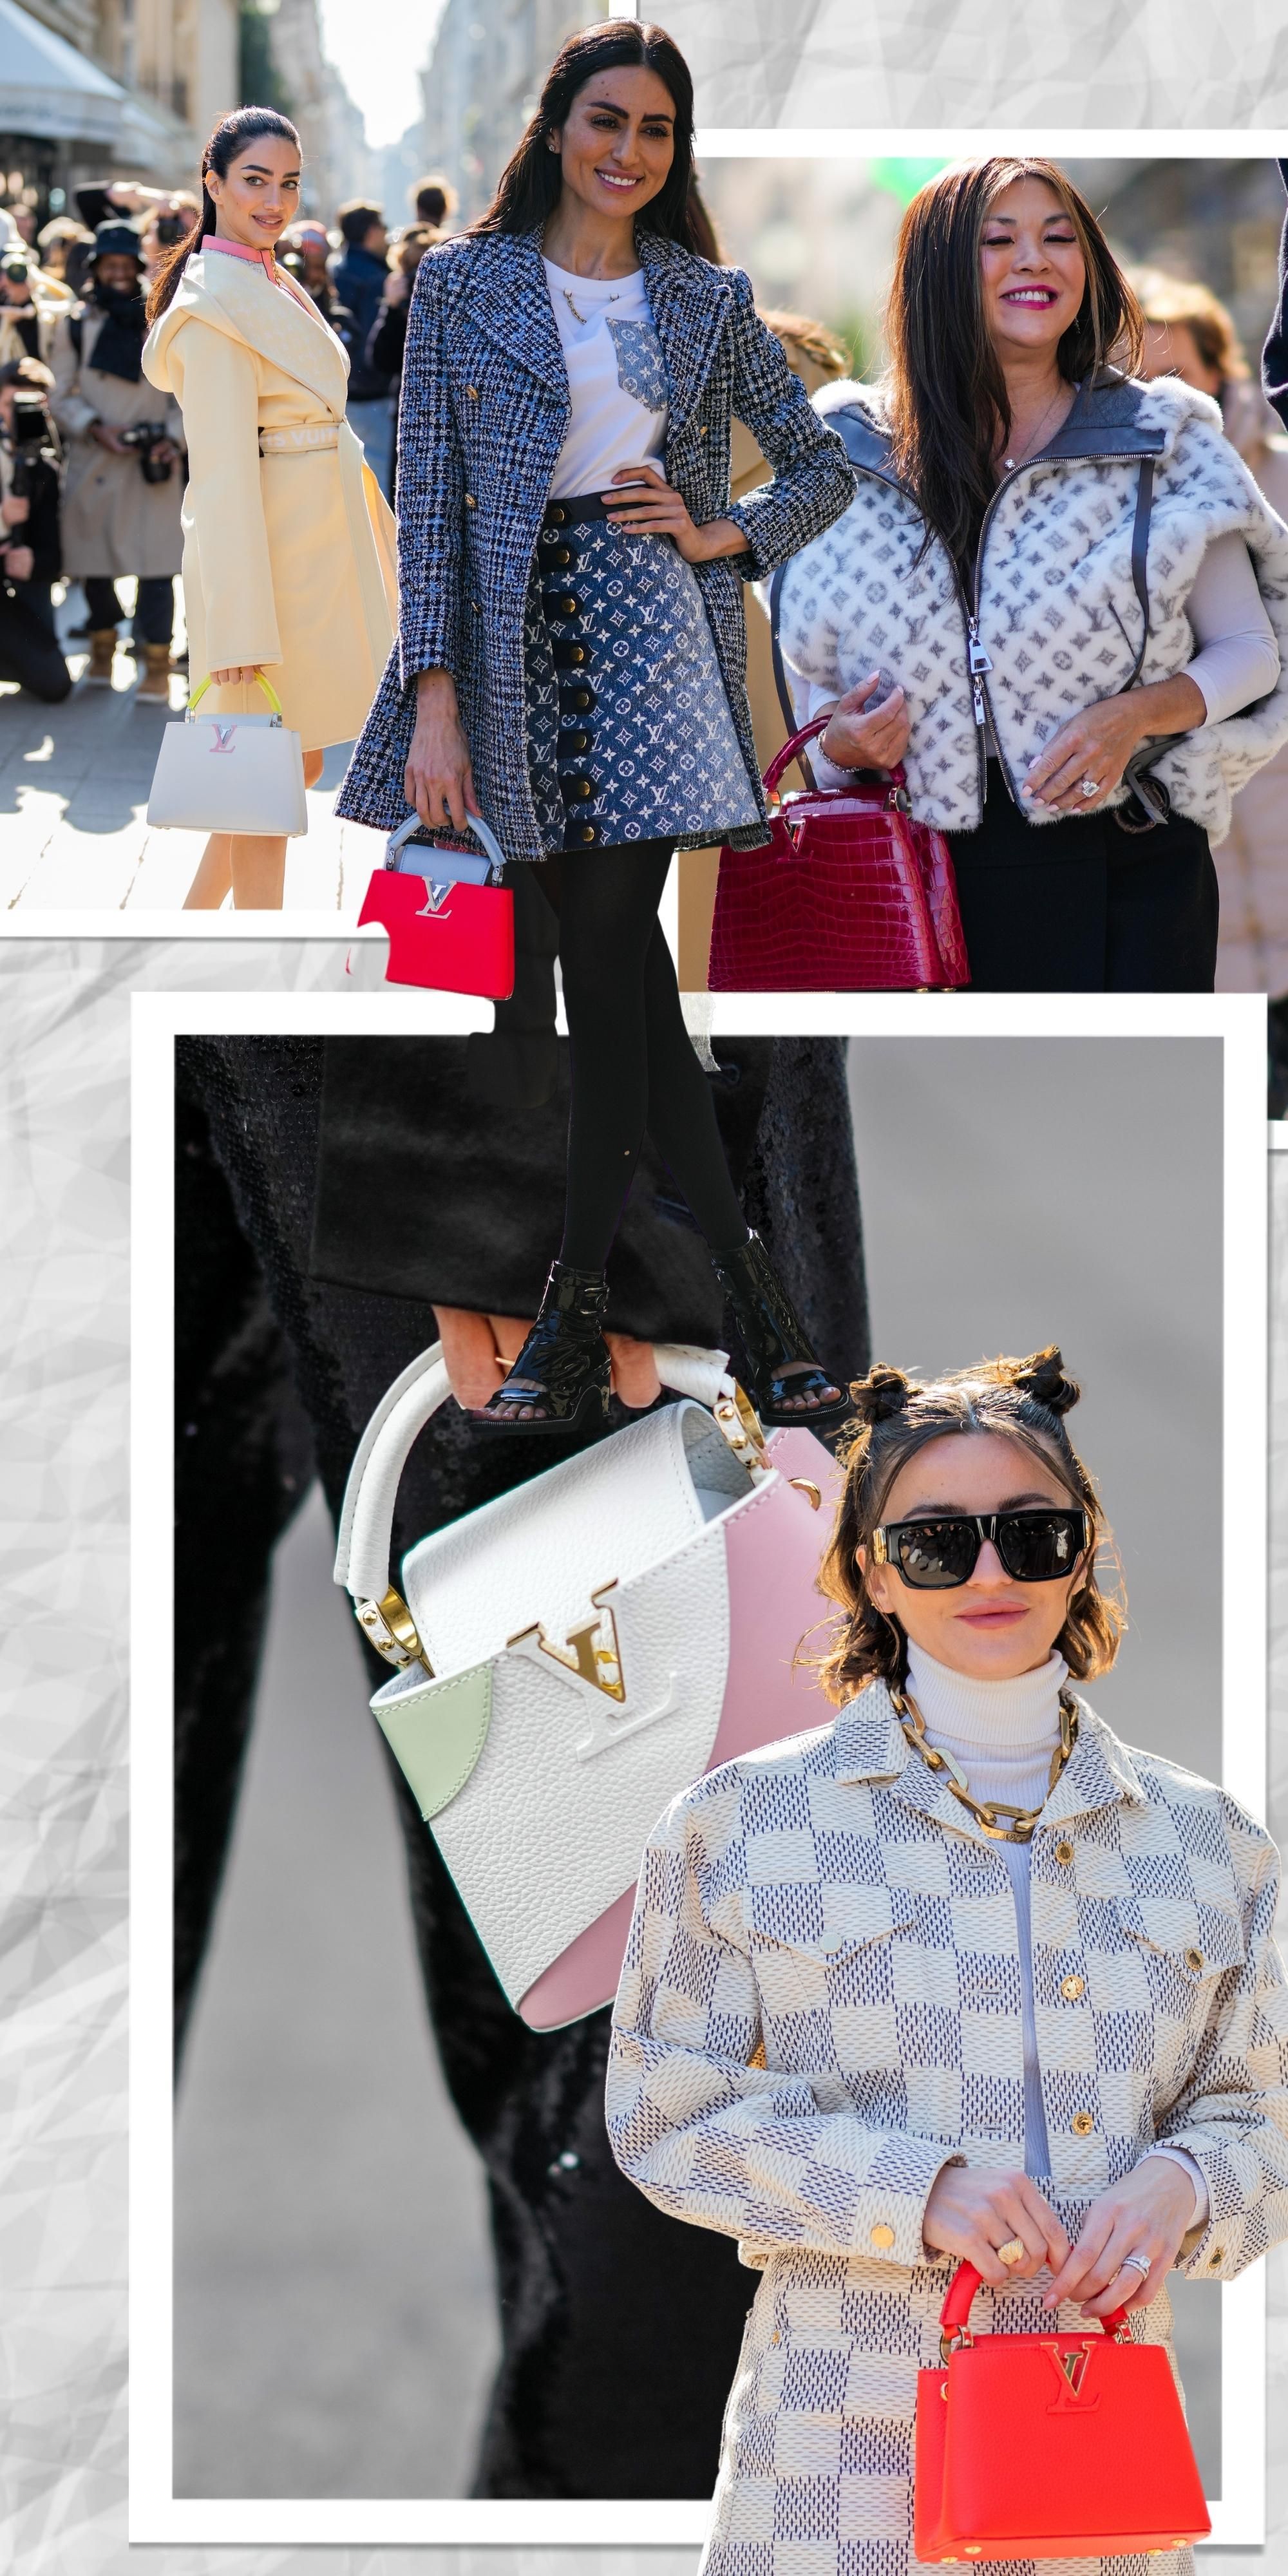 La nueva colección de bolsos de Louis Vuitton marca la tendencia